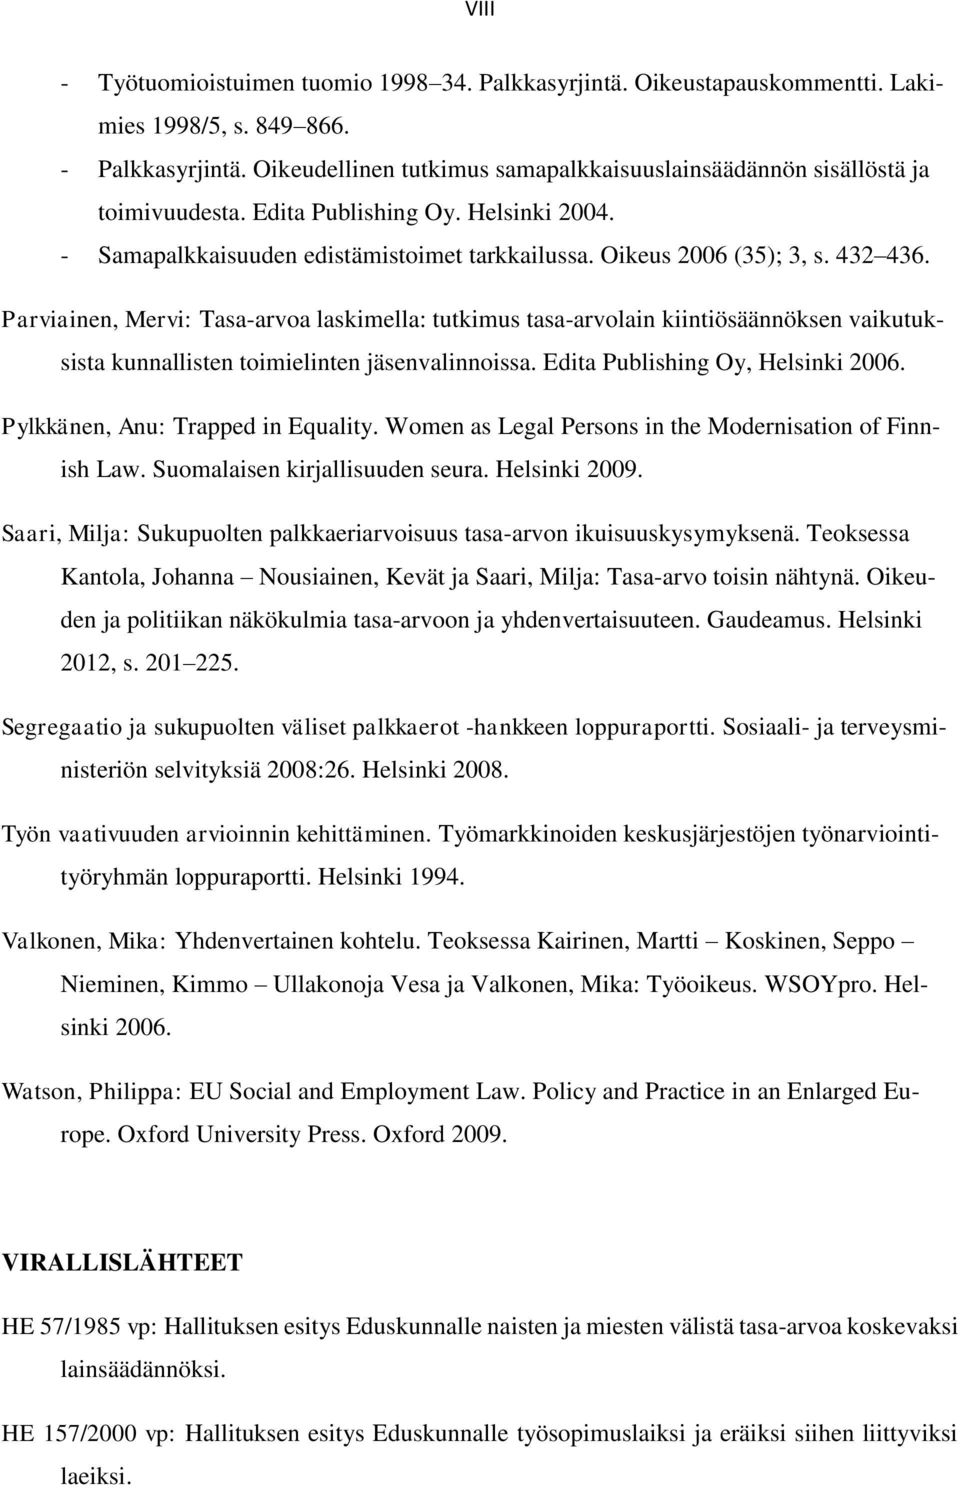 Parviainen, Mervi: Tasa-arvoa laskimella: tutkimus tasa-arvolain kiintiösäännöksen vaikutuksista kunnallisten toimielinten jäsenvalinnoissa. Edita Publishing Oy, Helsinki 2006.